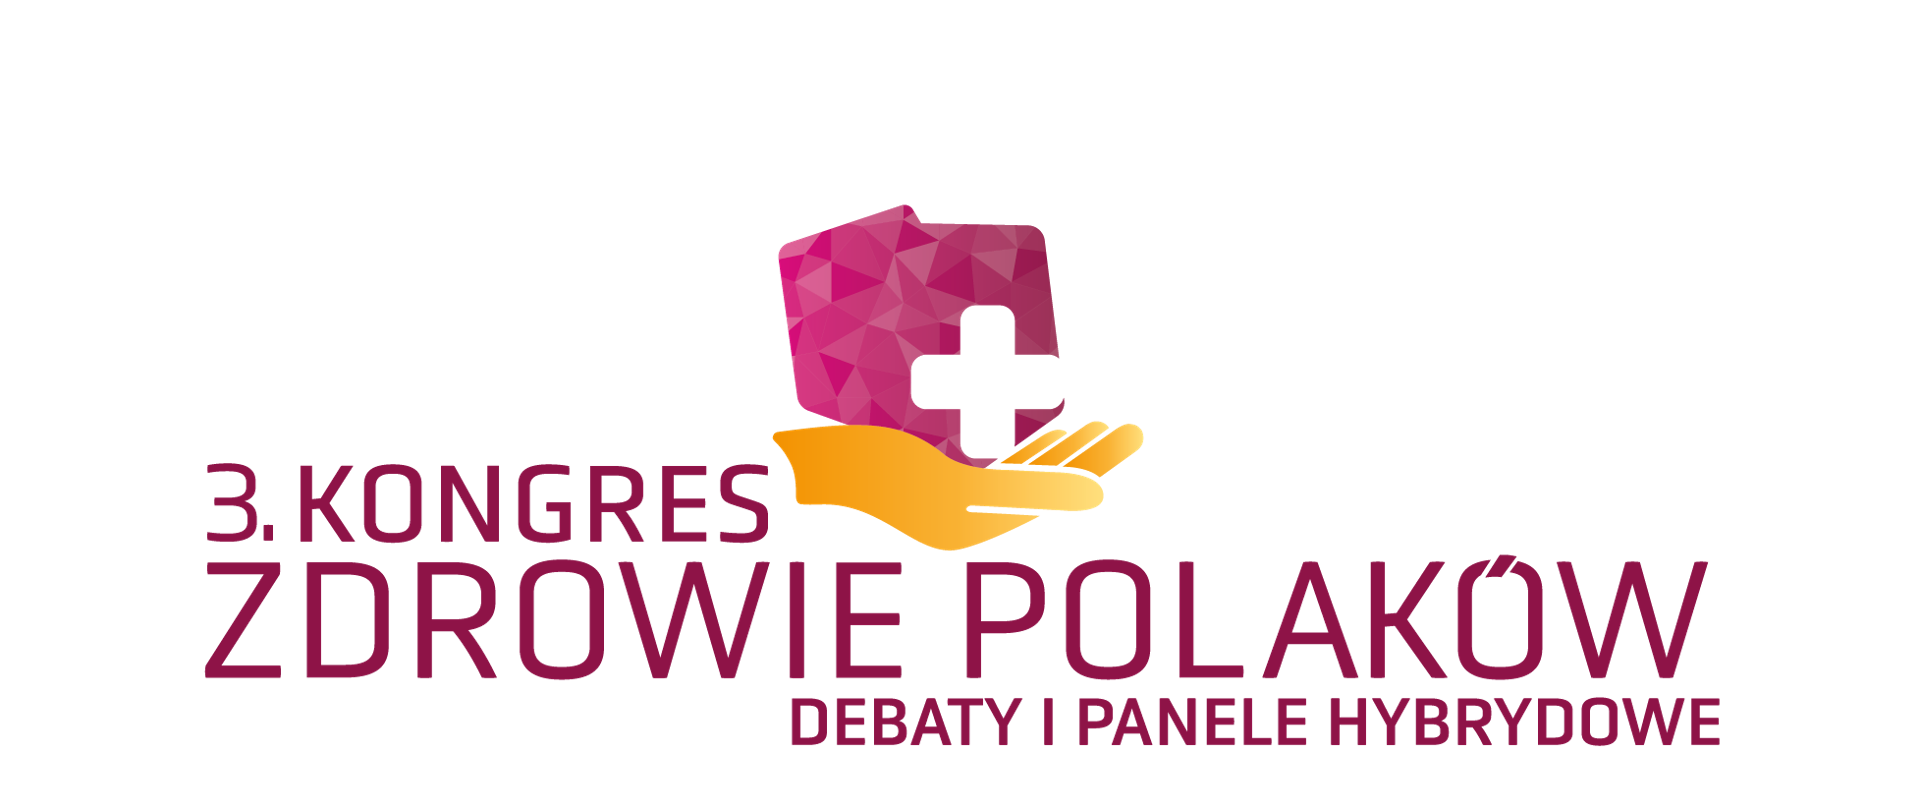 3. Kongres Zdrowie Polaków